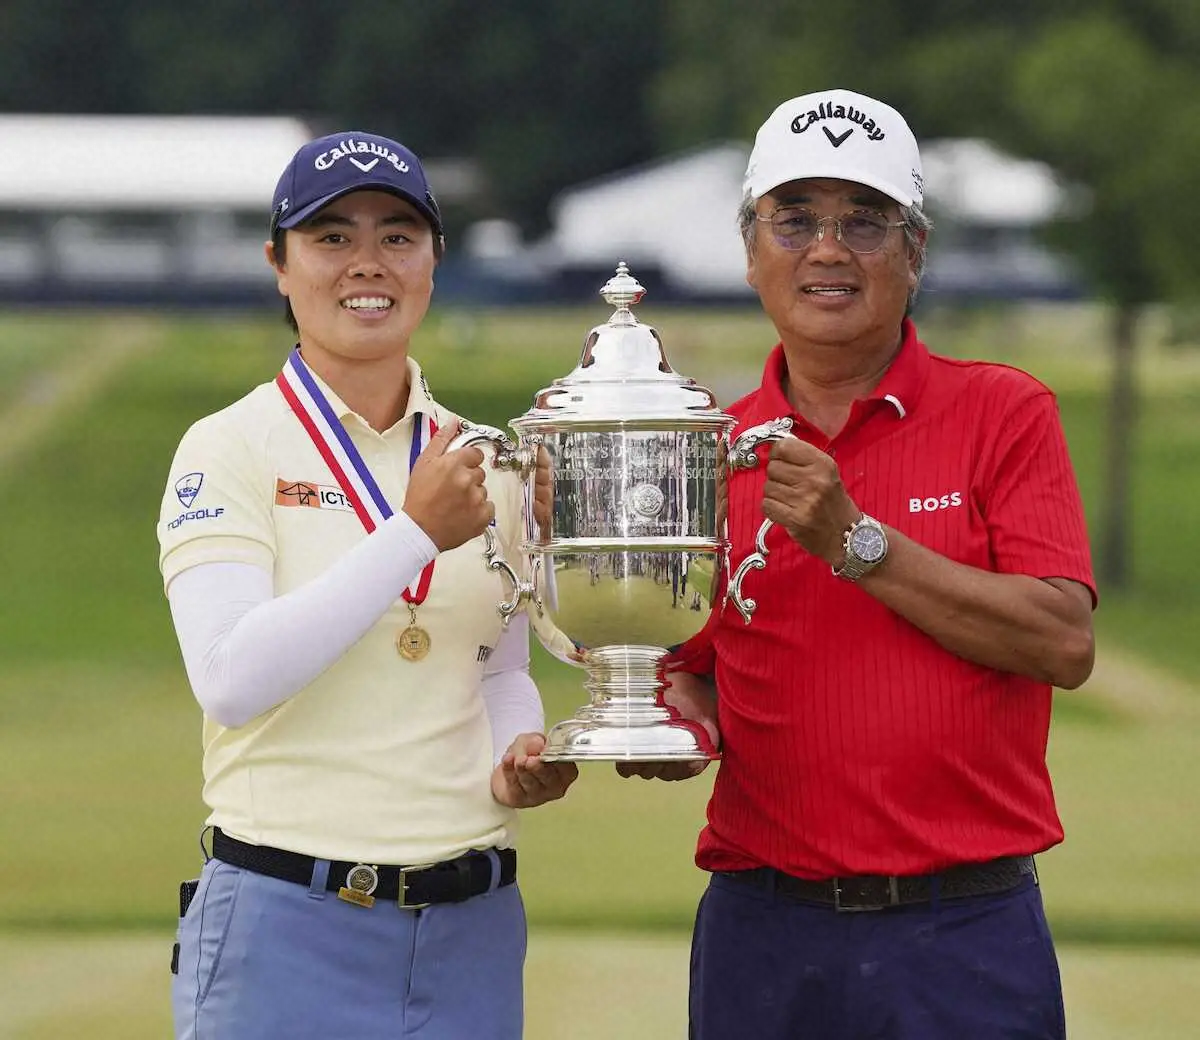 ゴルフの全米女子オープン選手権で優勝し、父・正和さんとトロフィーを手にする笹生優花